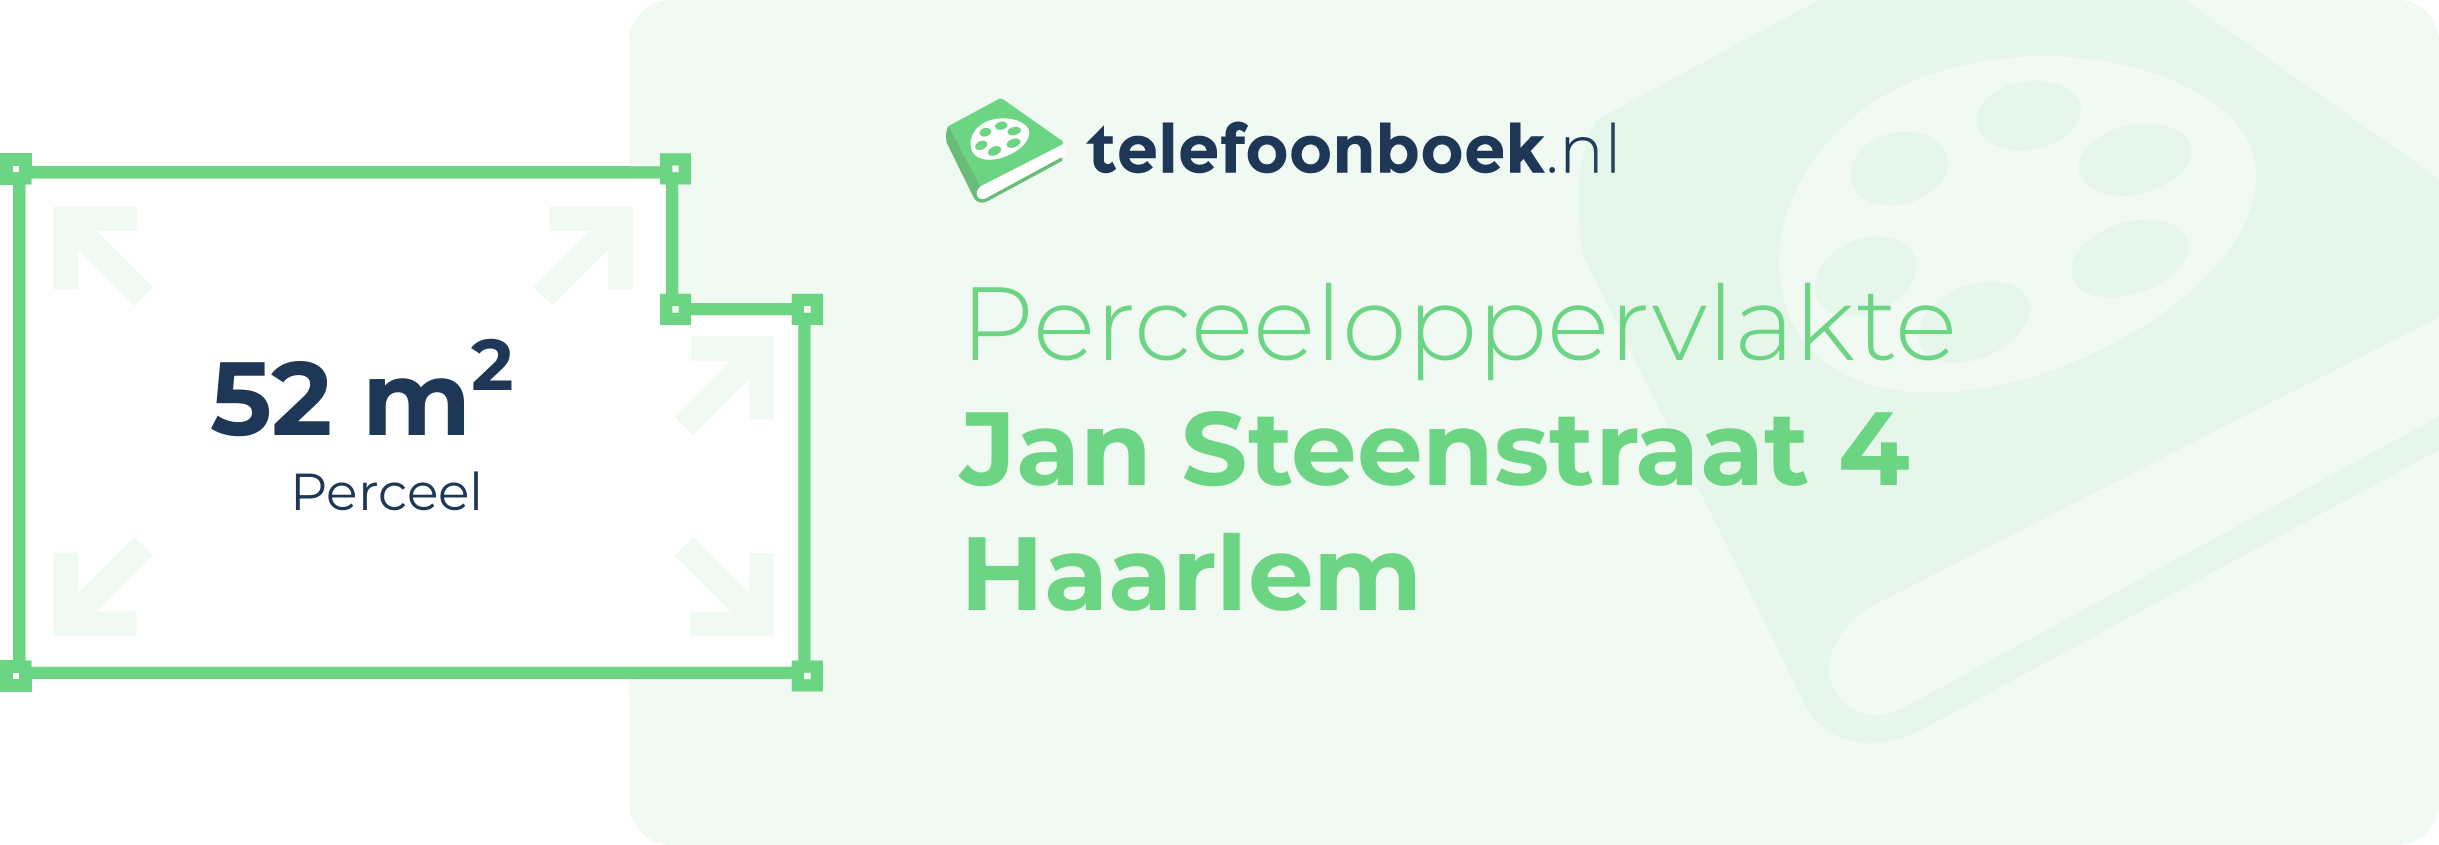 Perceeloppervlakte Jan Steenstraat 4 Haarlem